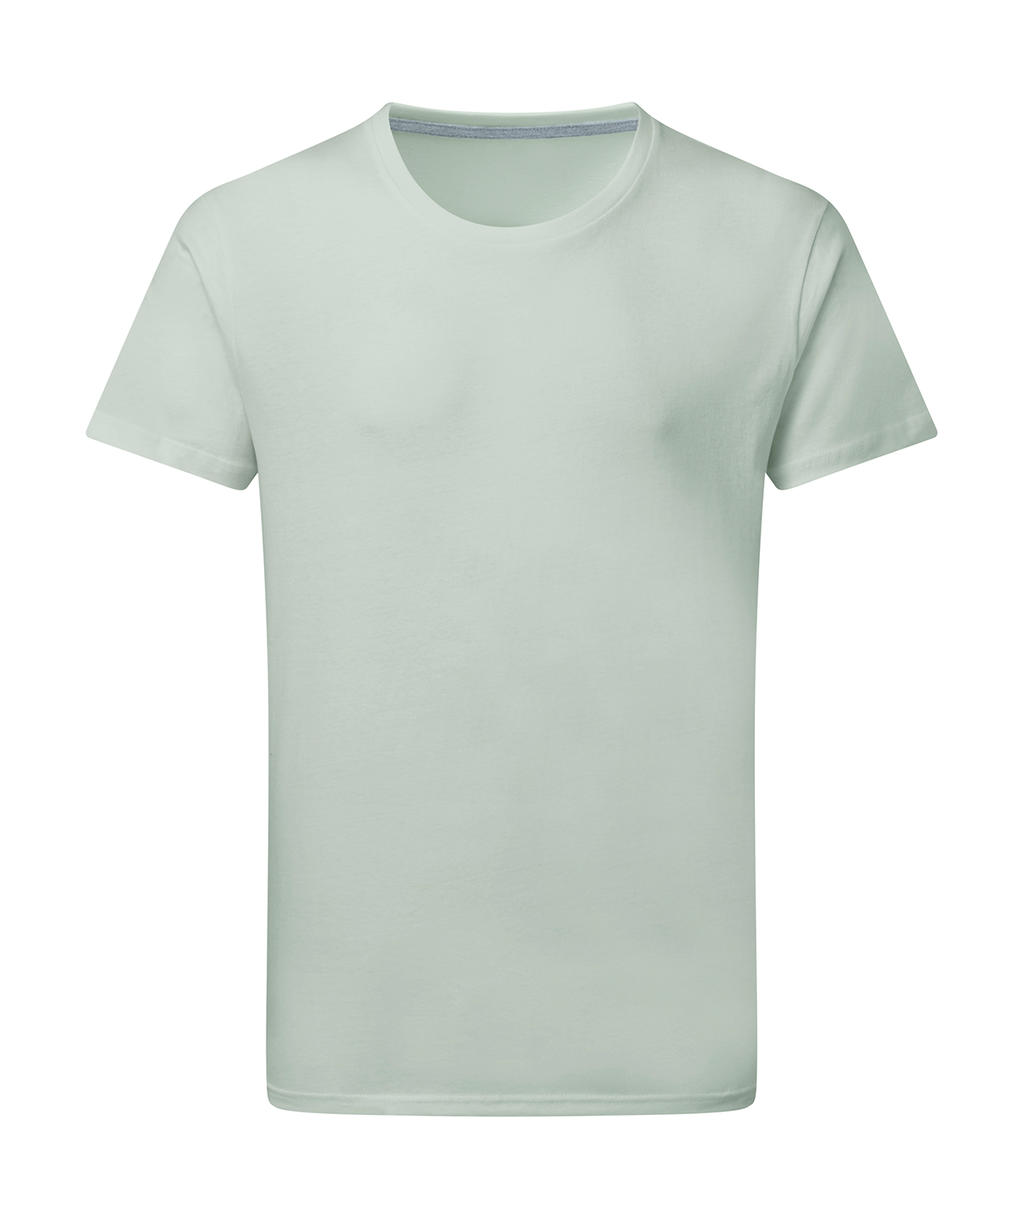 Dokonale potlačiteľné tričko bez štítku - mercury grey